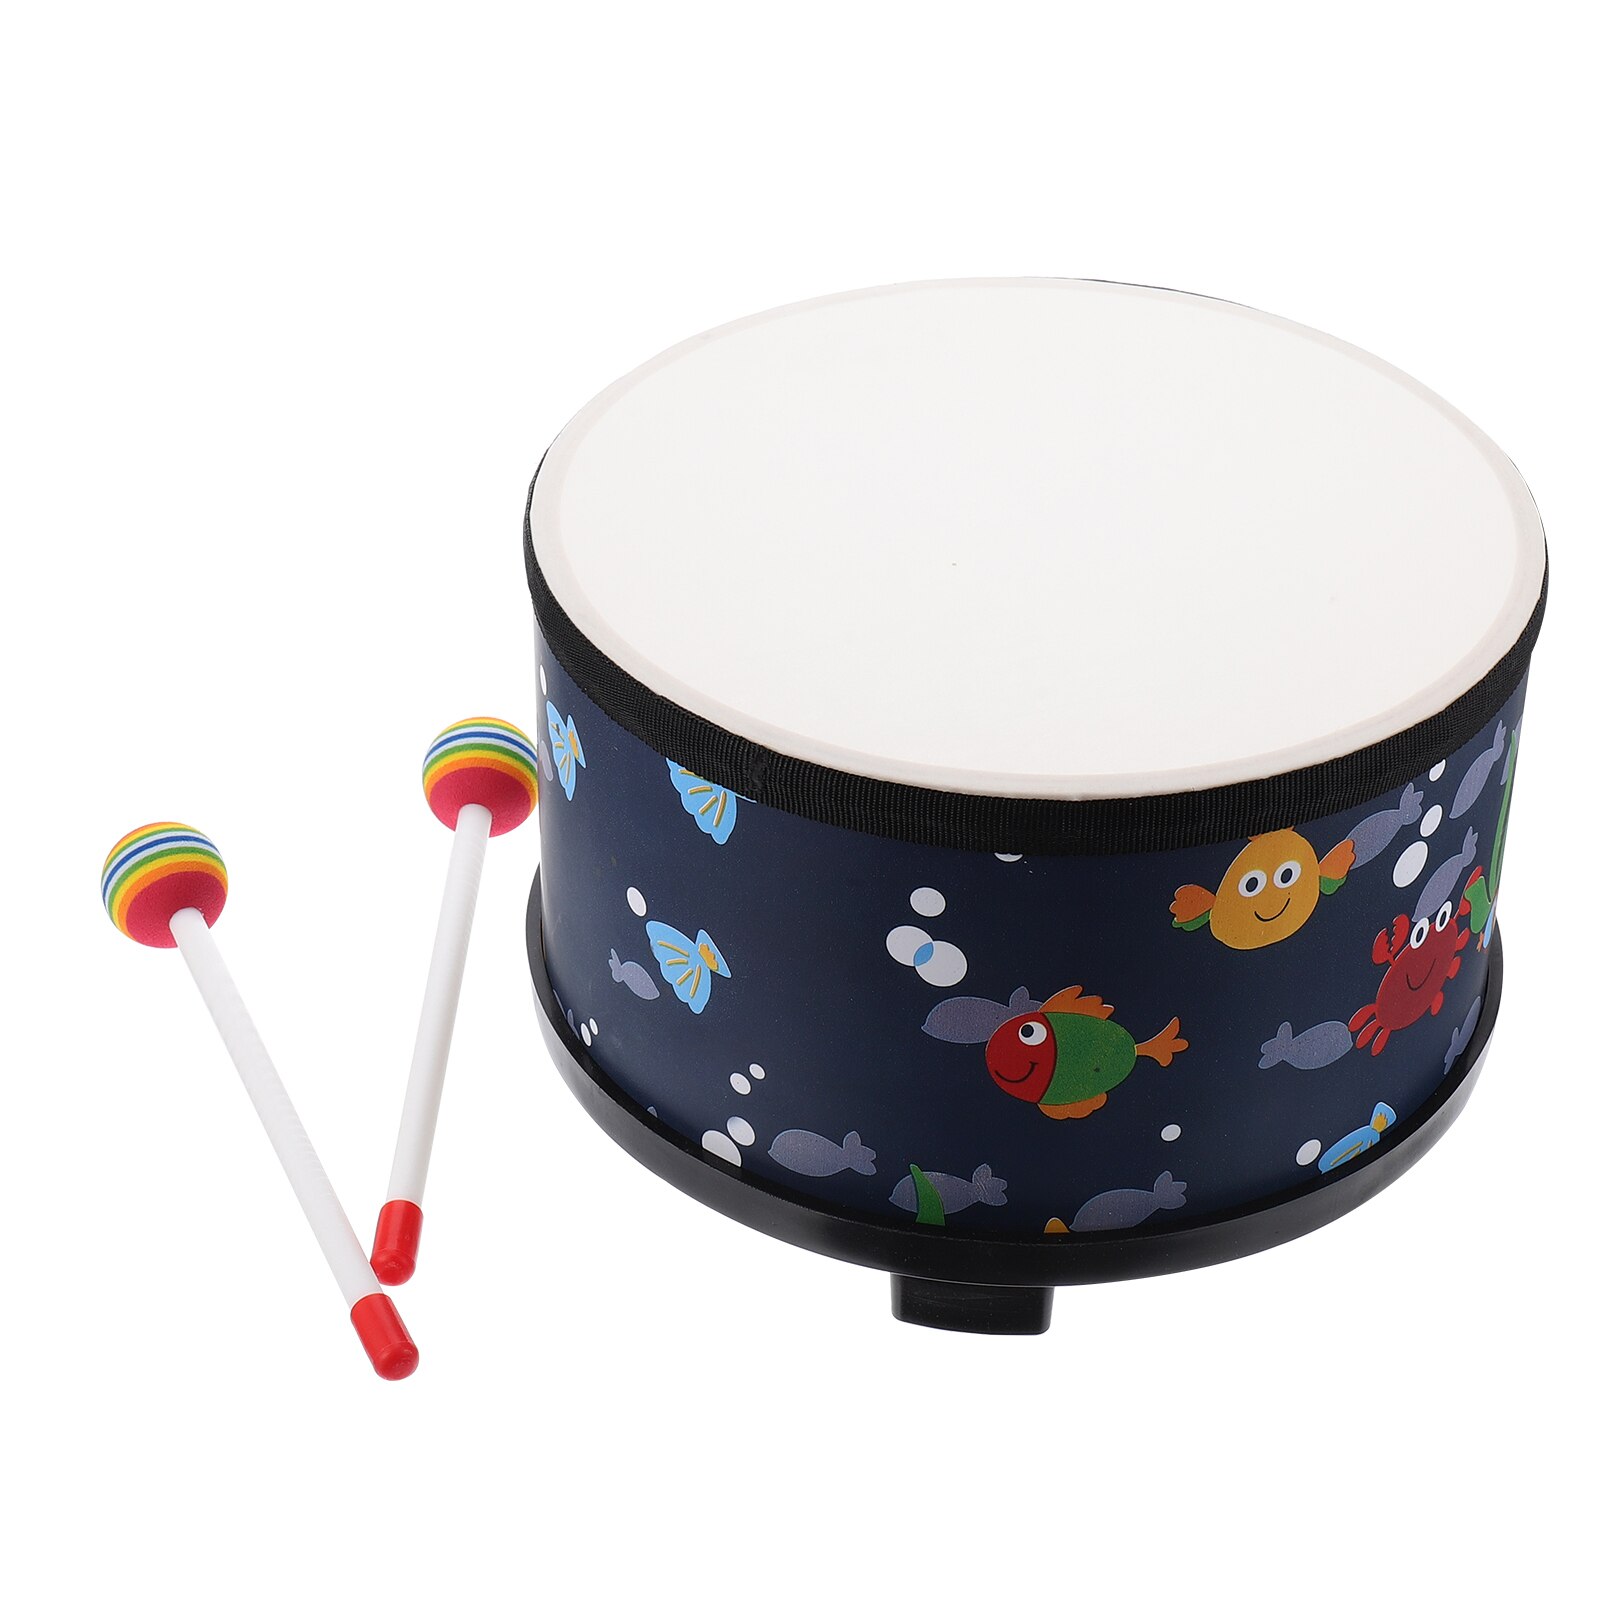 Muzikale Drum Speelgoed Creatieve Grappige Duurzaam Portable Praktische Muziek Kloppen Speelgoed Educatief Muziek Speelgoed